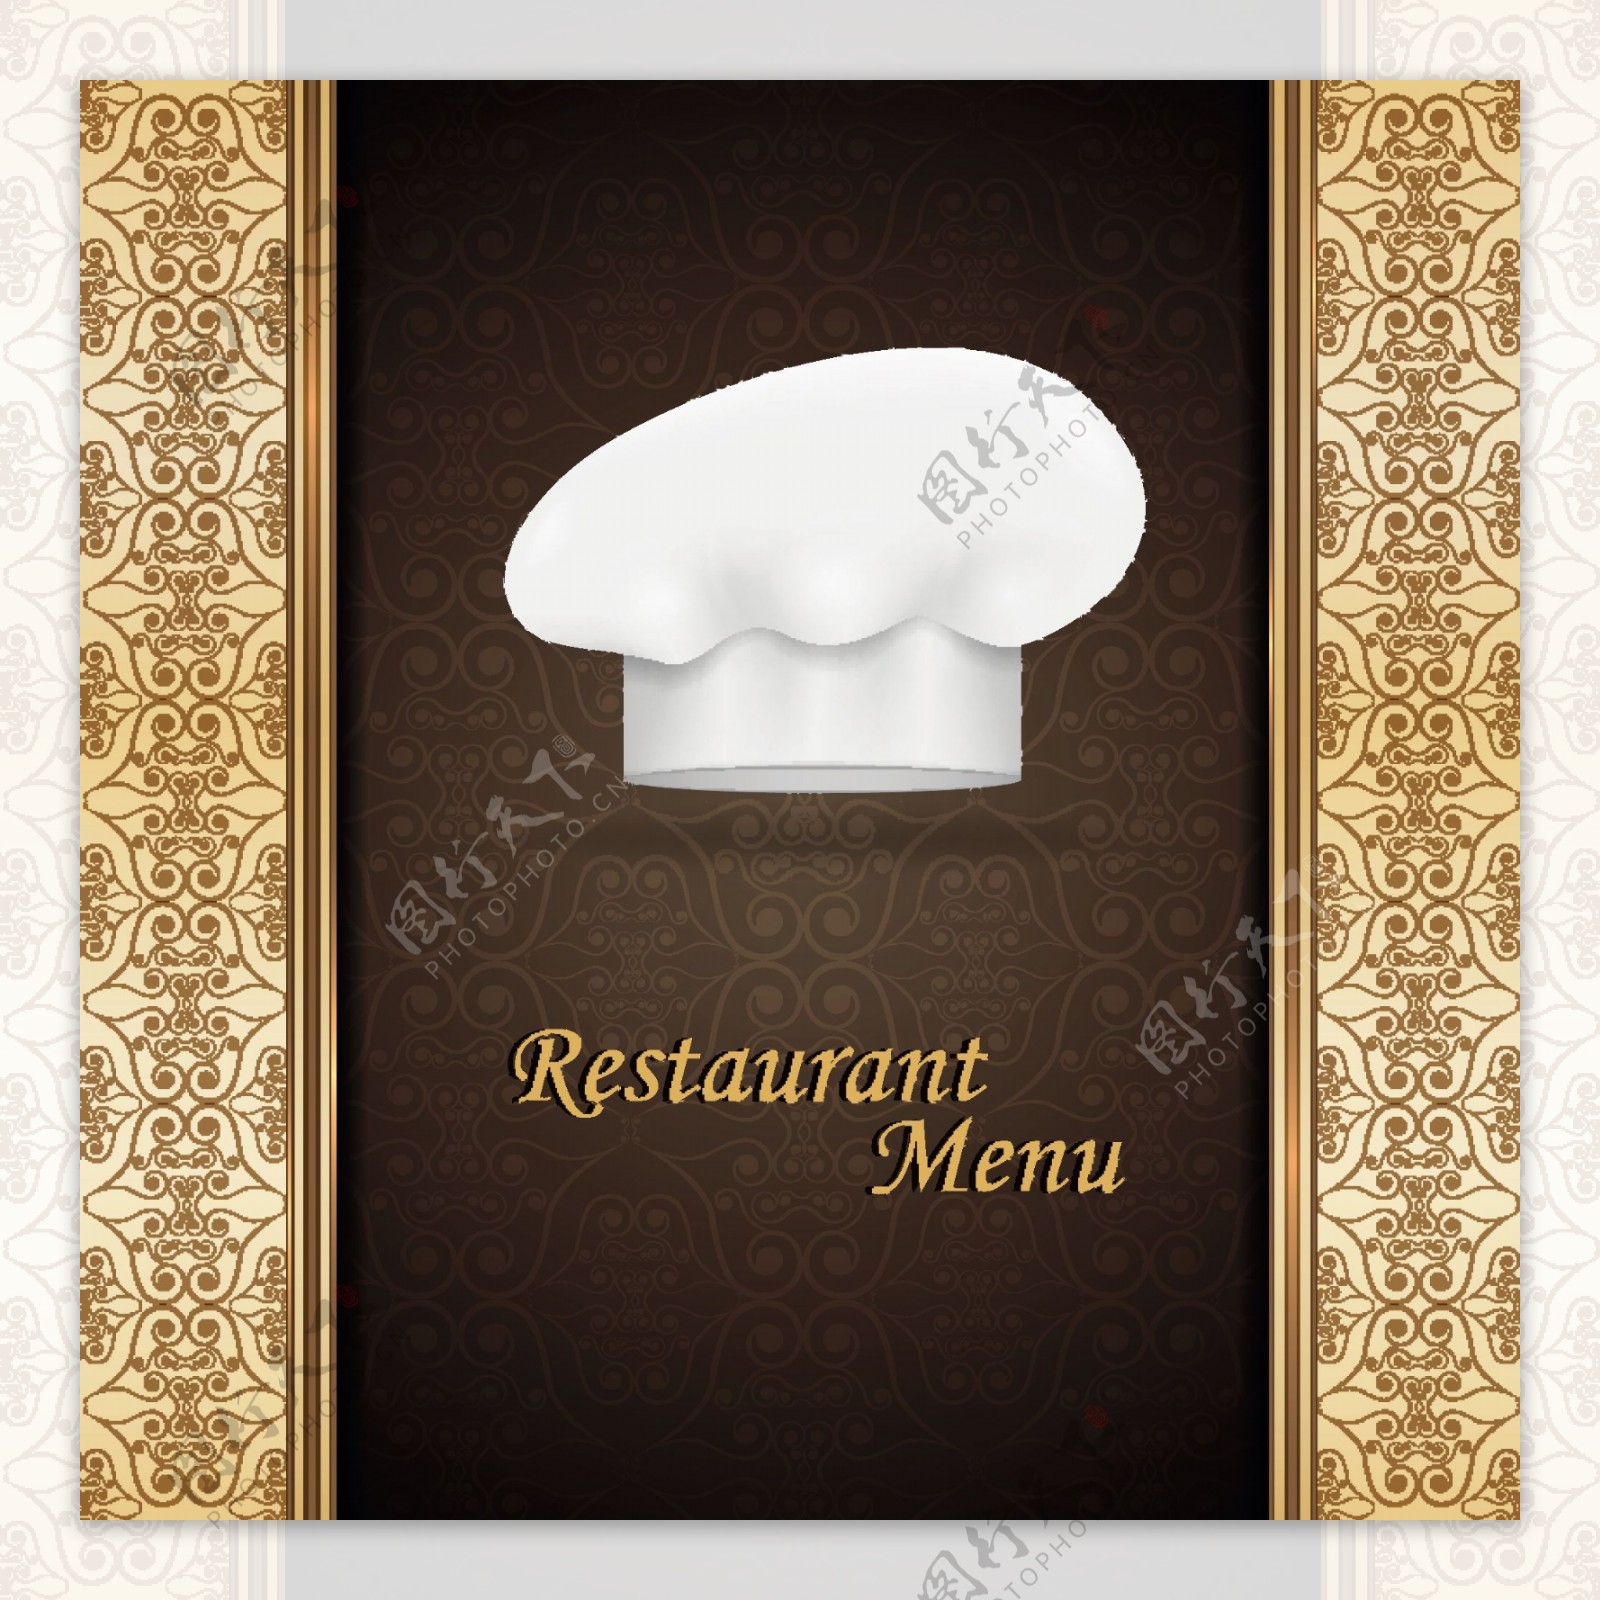 厨师的帽子和餐馆的菜单封面设计矢量图01